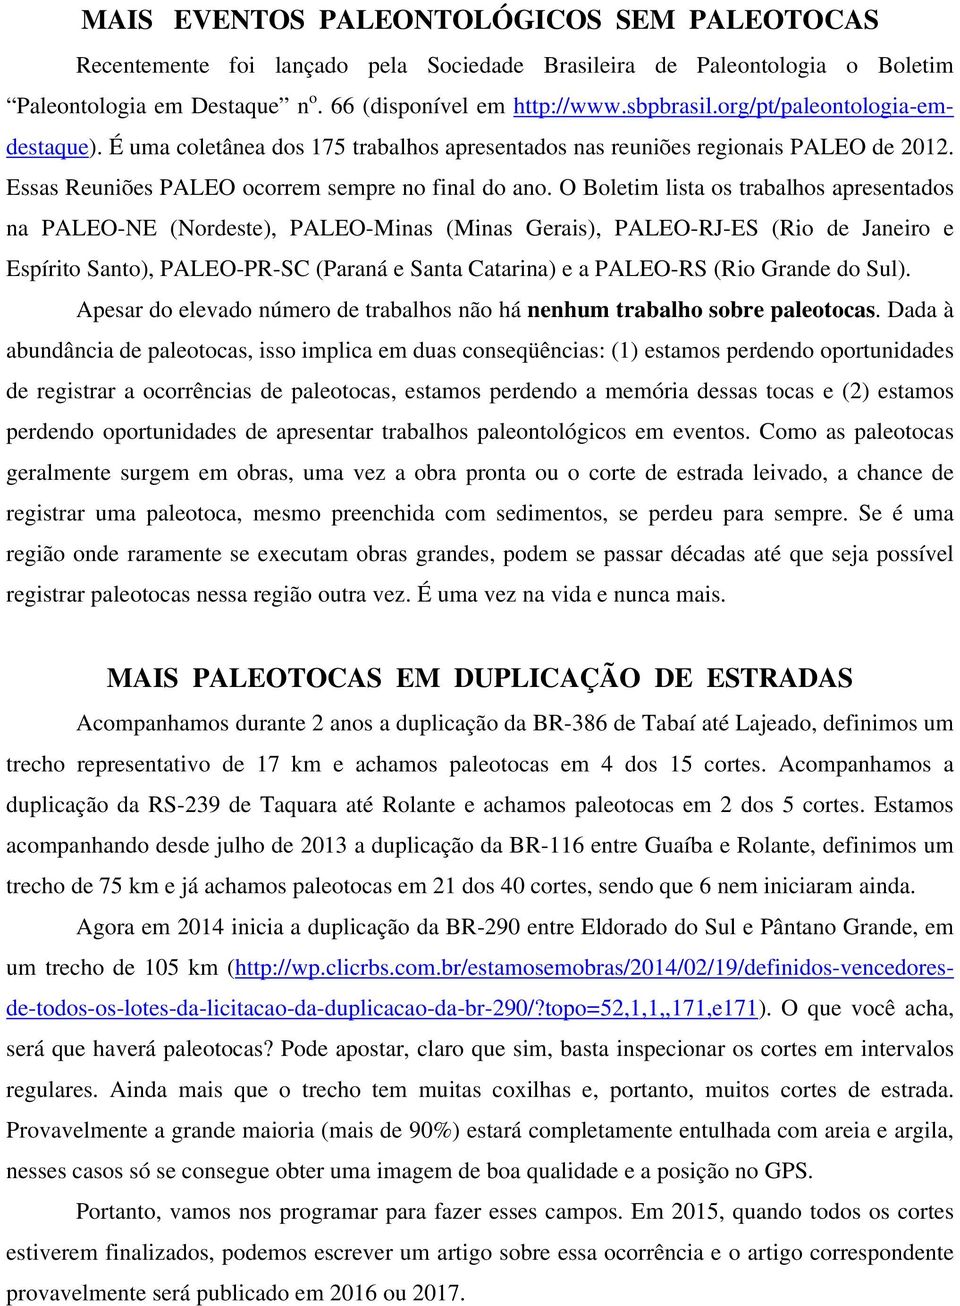 O Boletim lista os trabalhos apresentados na PALEO-NE (Nordeste), PALEO-Minas (Minas Gerais), PALEO-RJ-ES (Rio de Janeiro e Espírito Santo), PALEO-PR-SC (Paraná e Santa Catarina) e a PALEO-RS (Rio